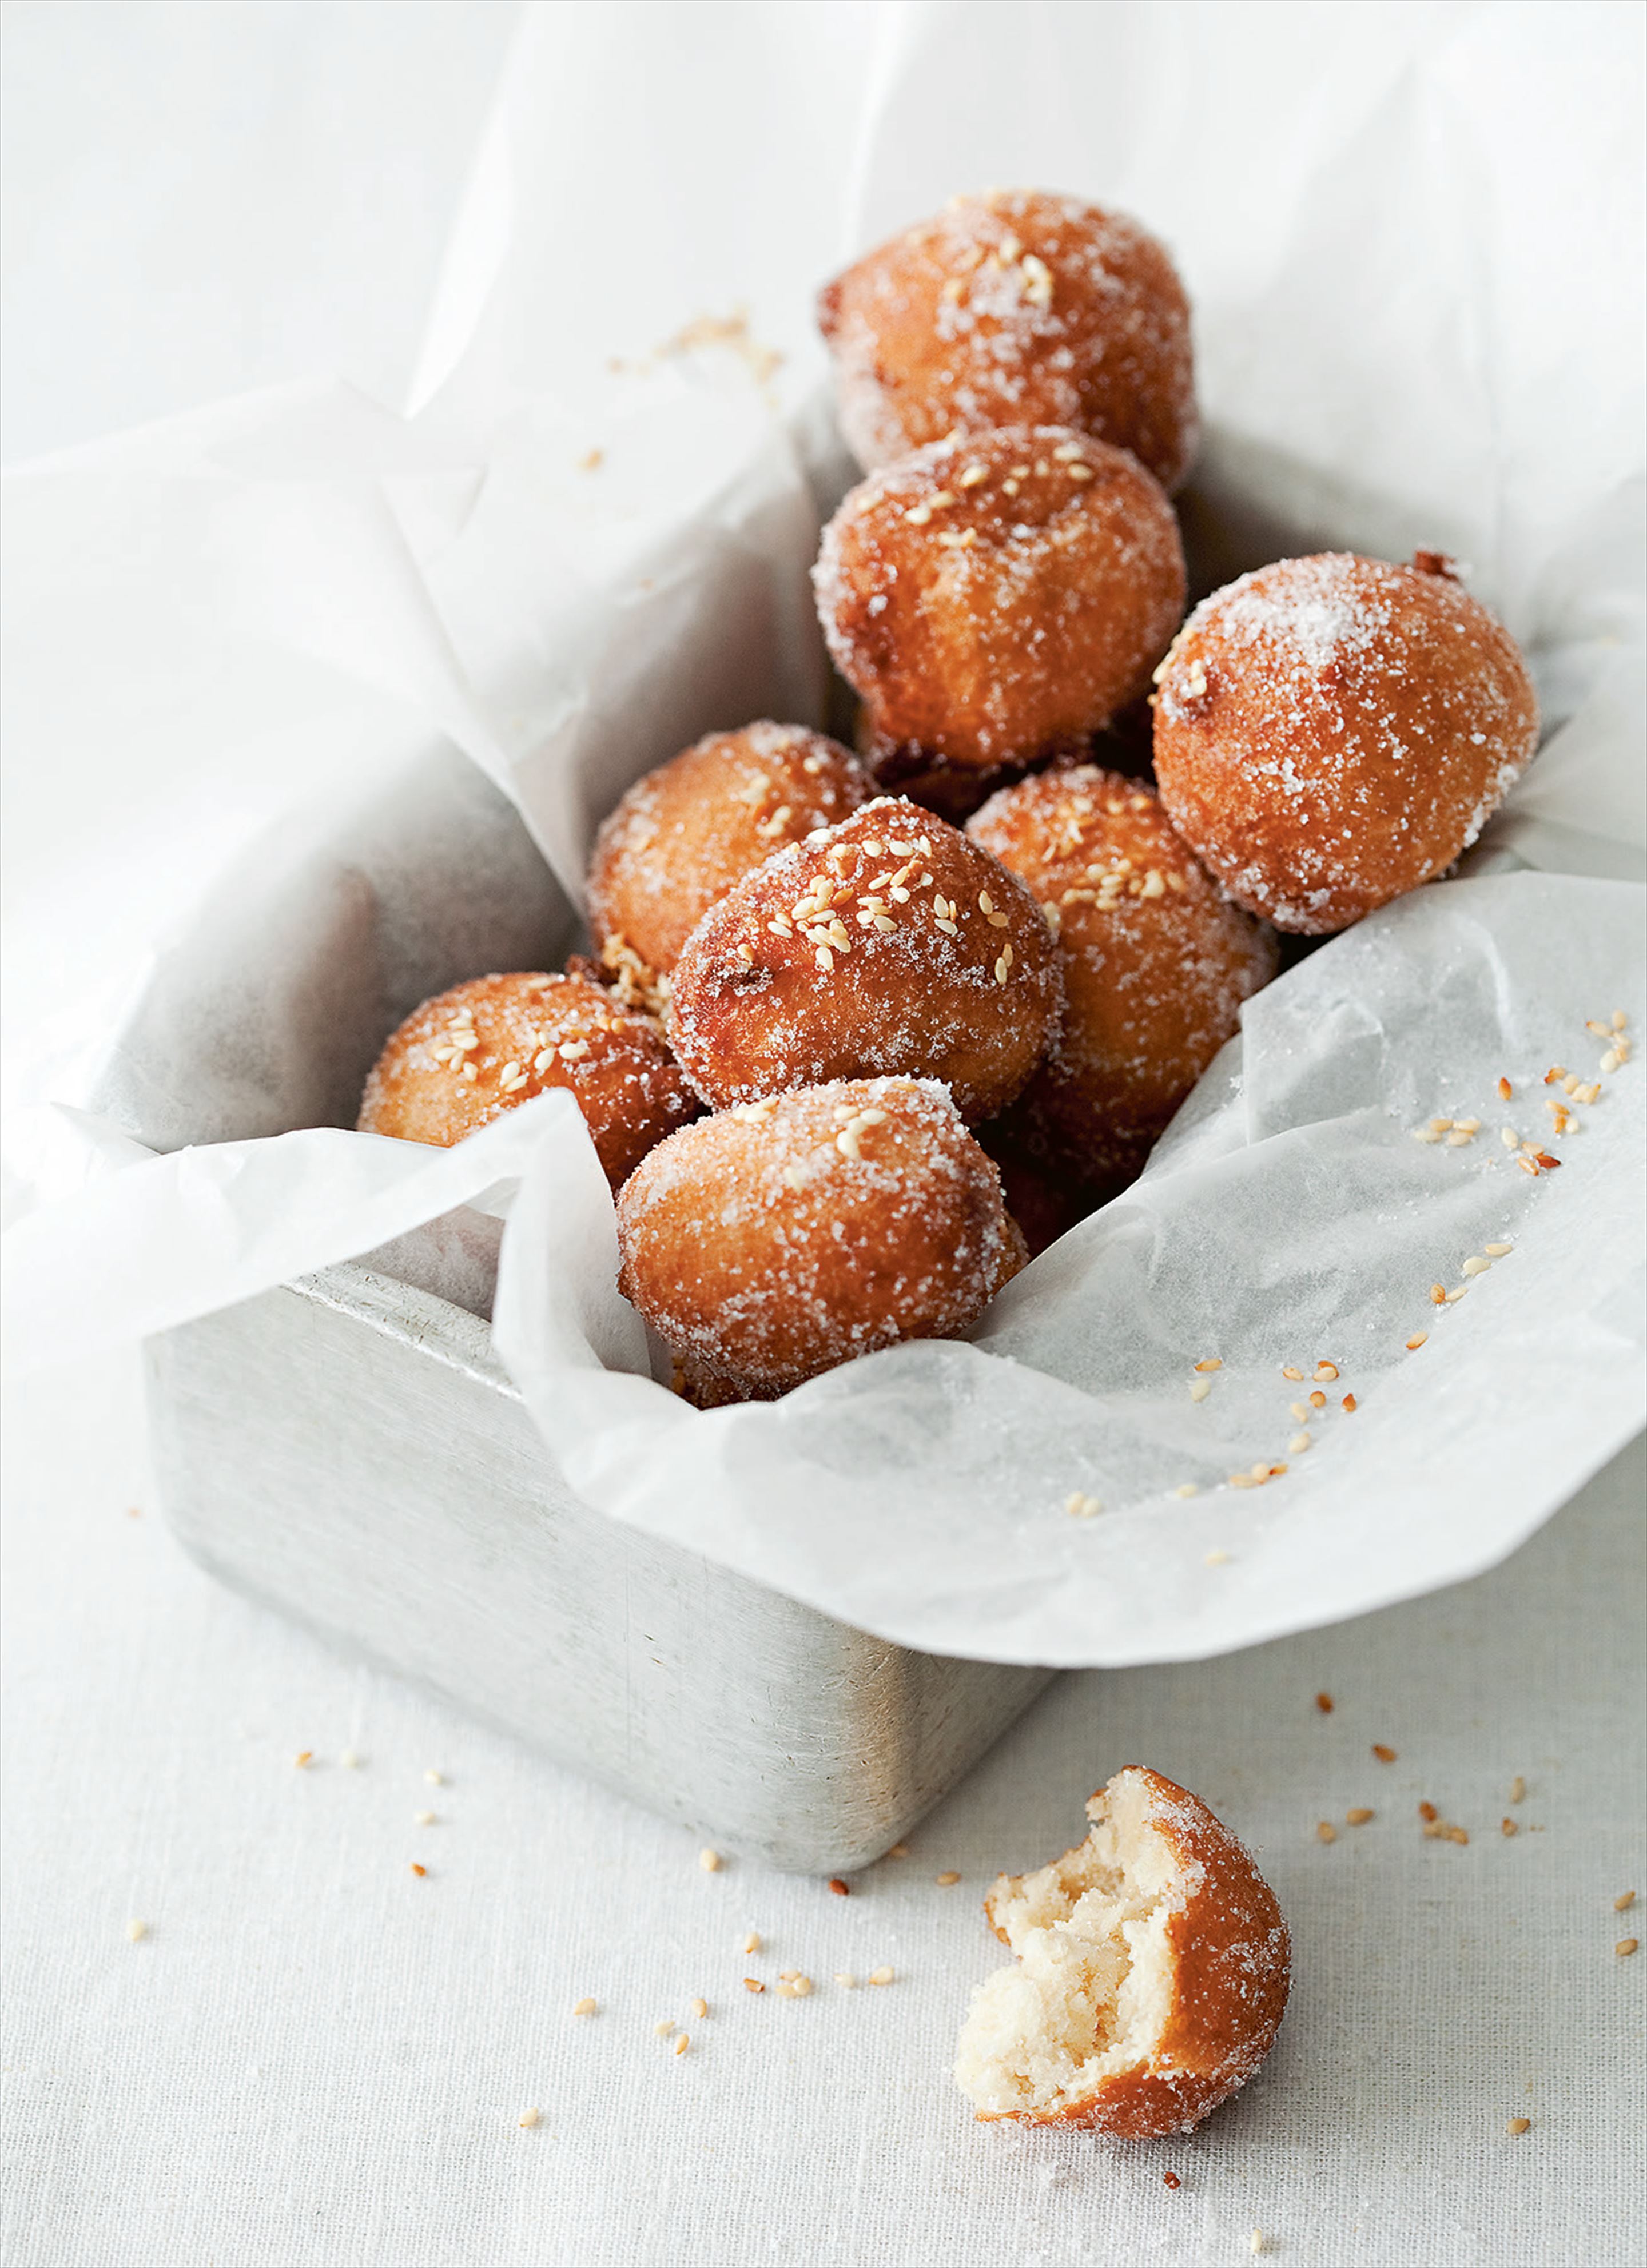 Greek doughnuts